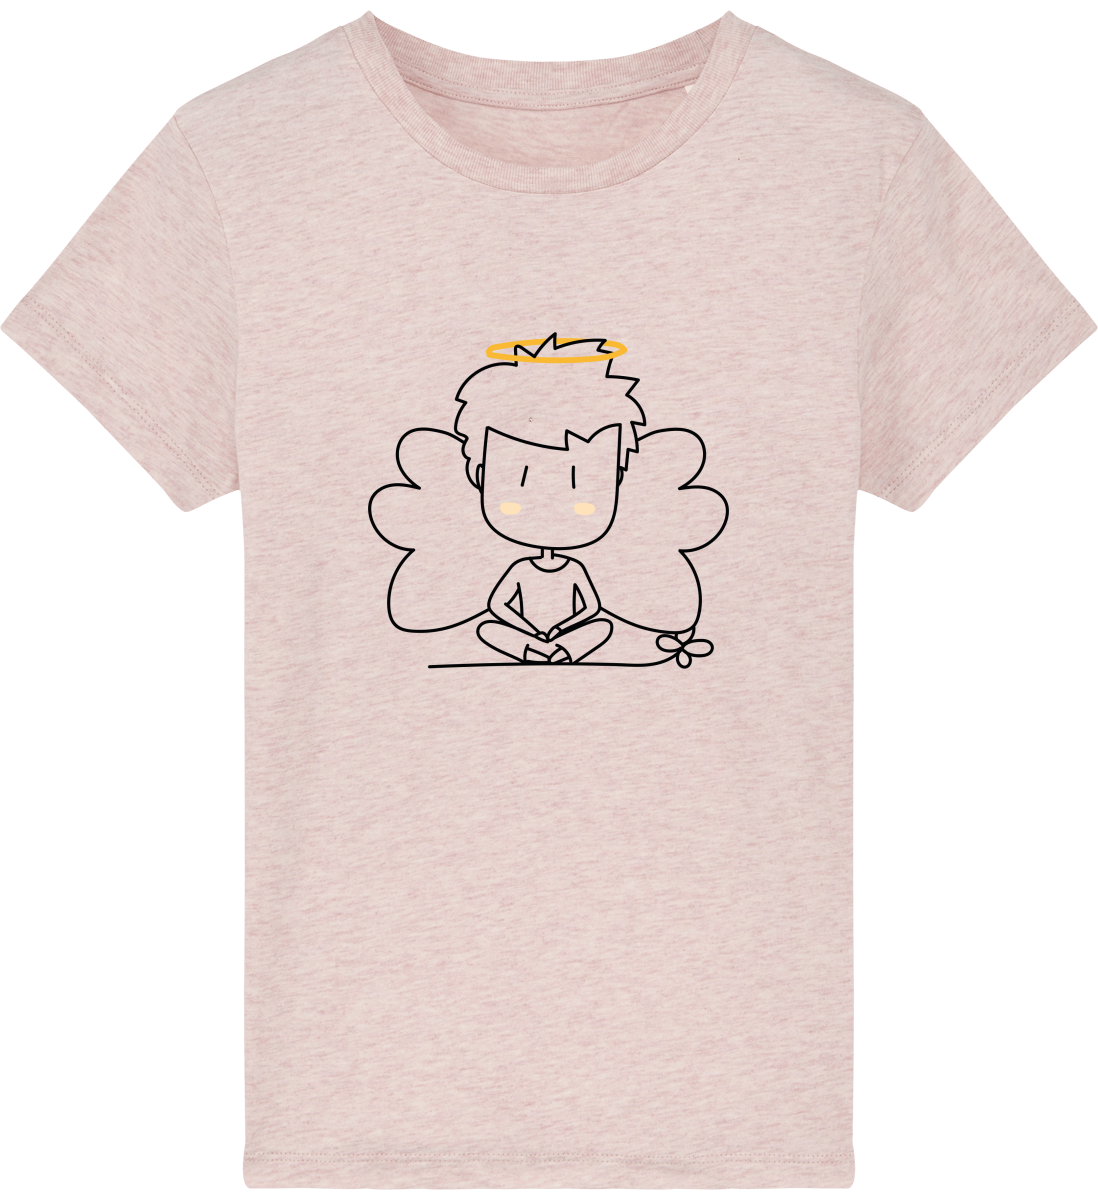 Mini Creator Le T-shirt iconique enfant blanc